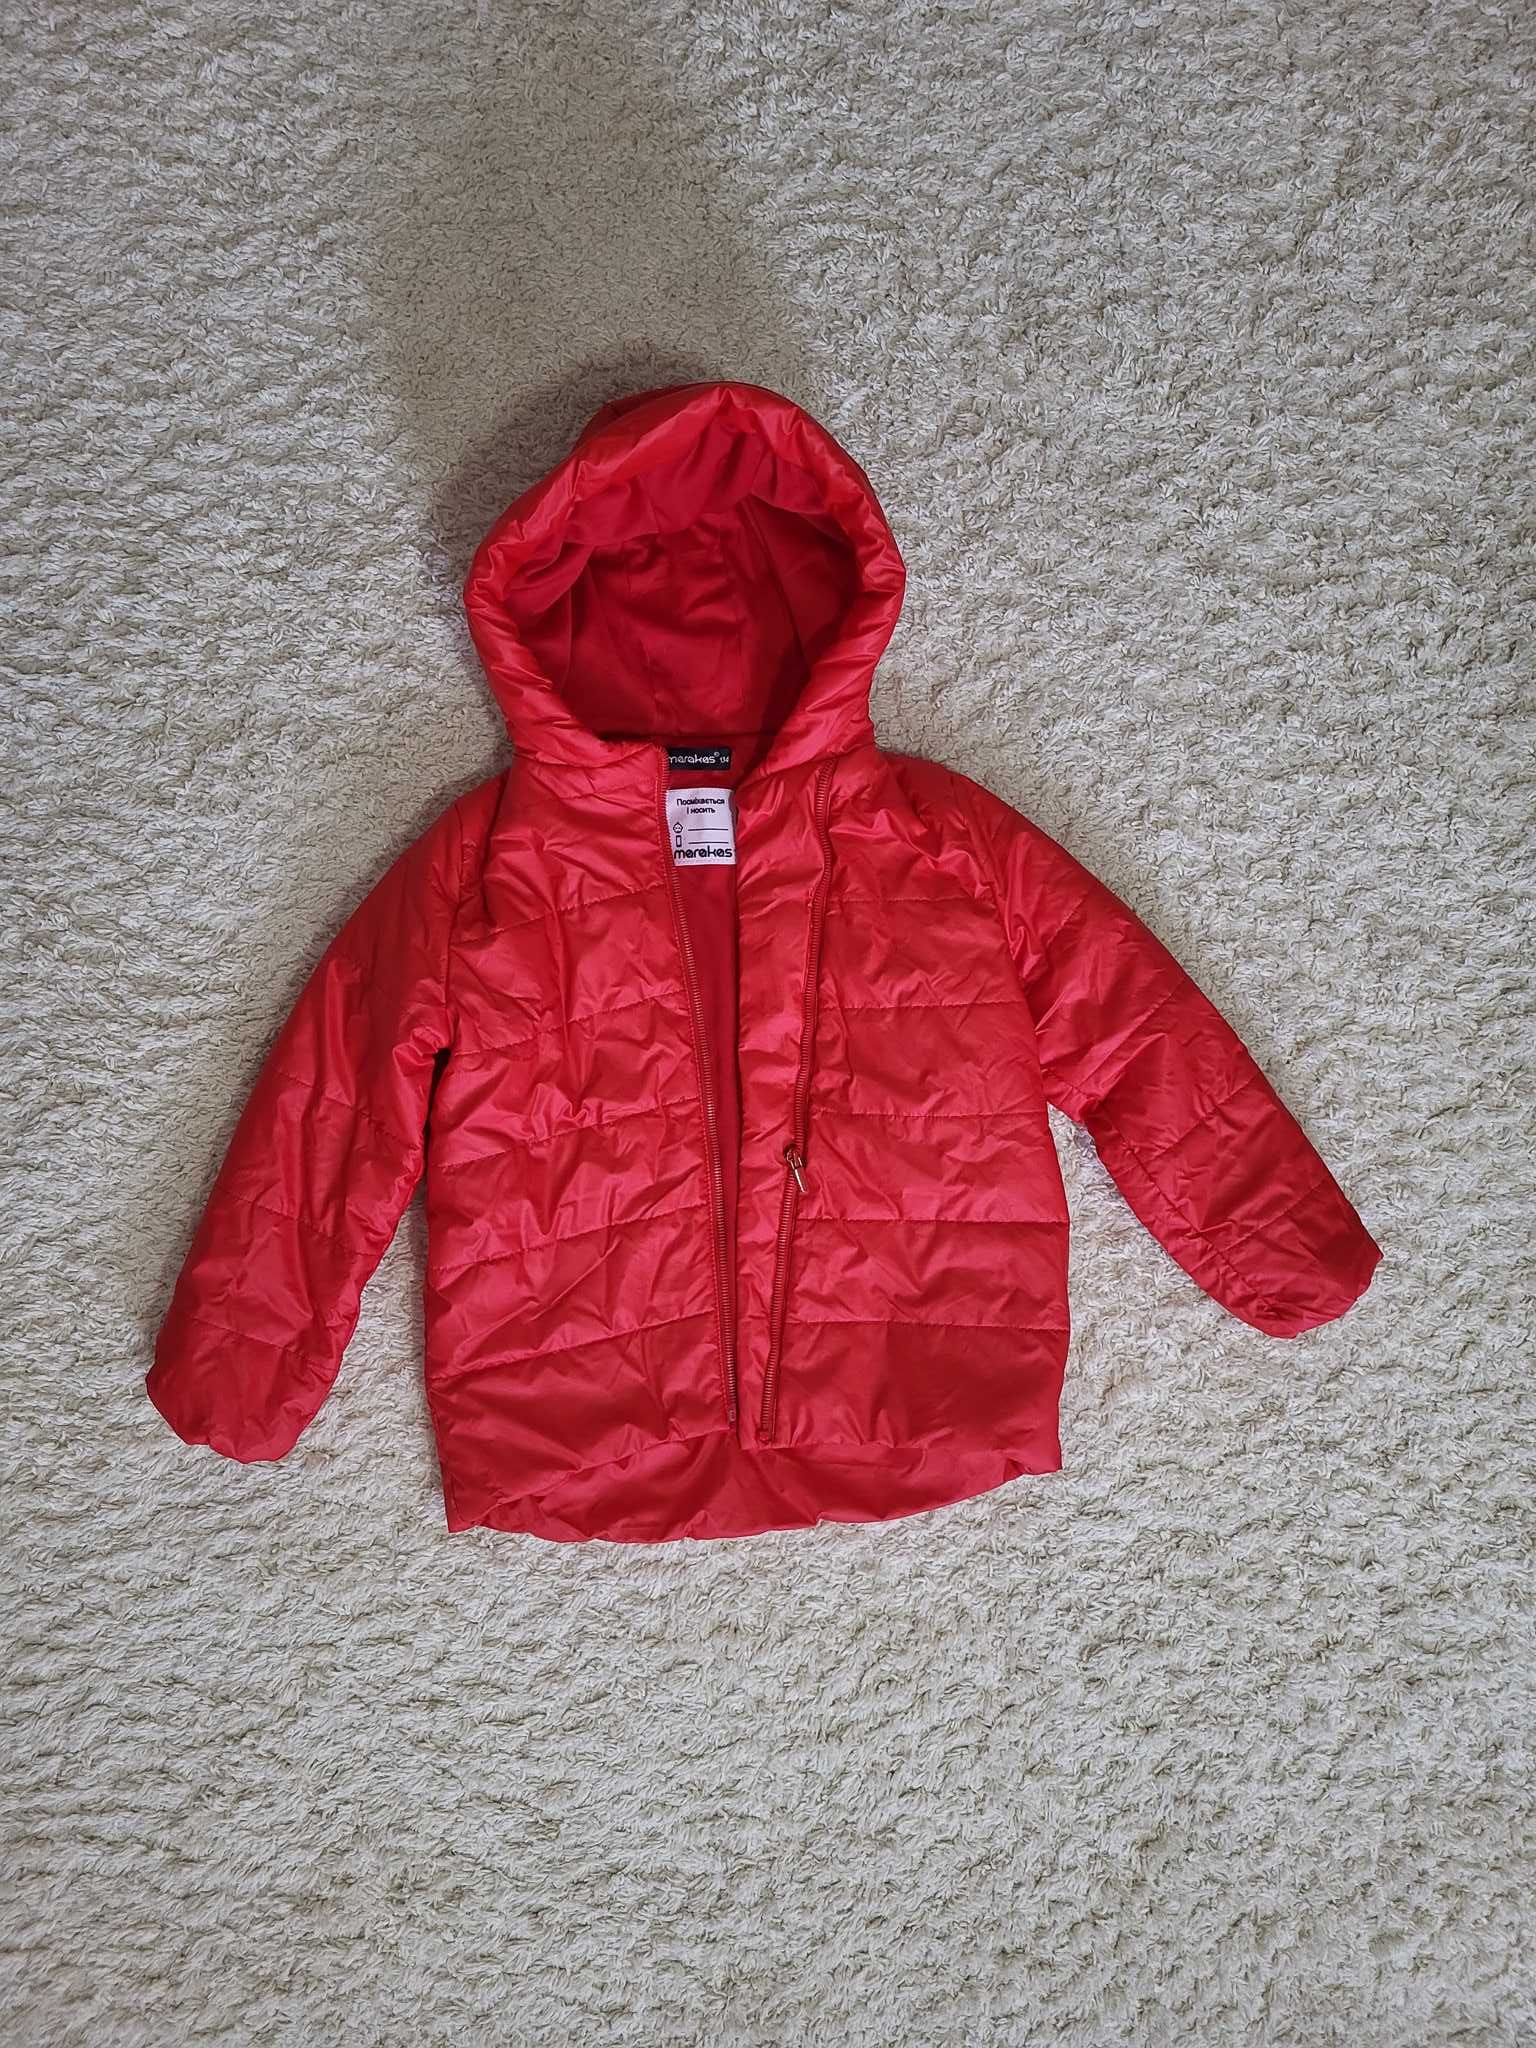 Стильна куртка Marakas на дівчинку демі сезон 134 Червона